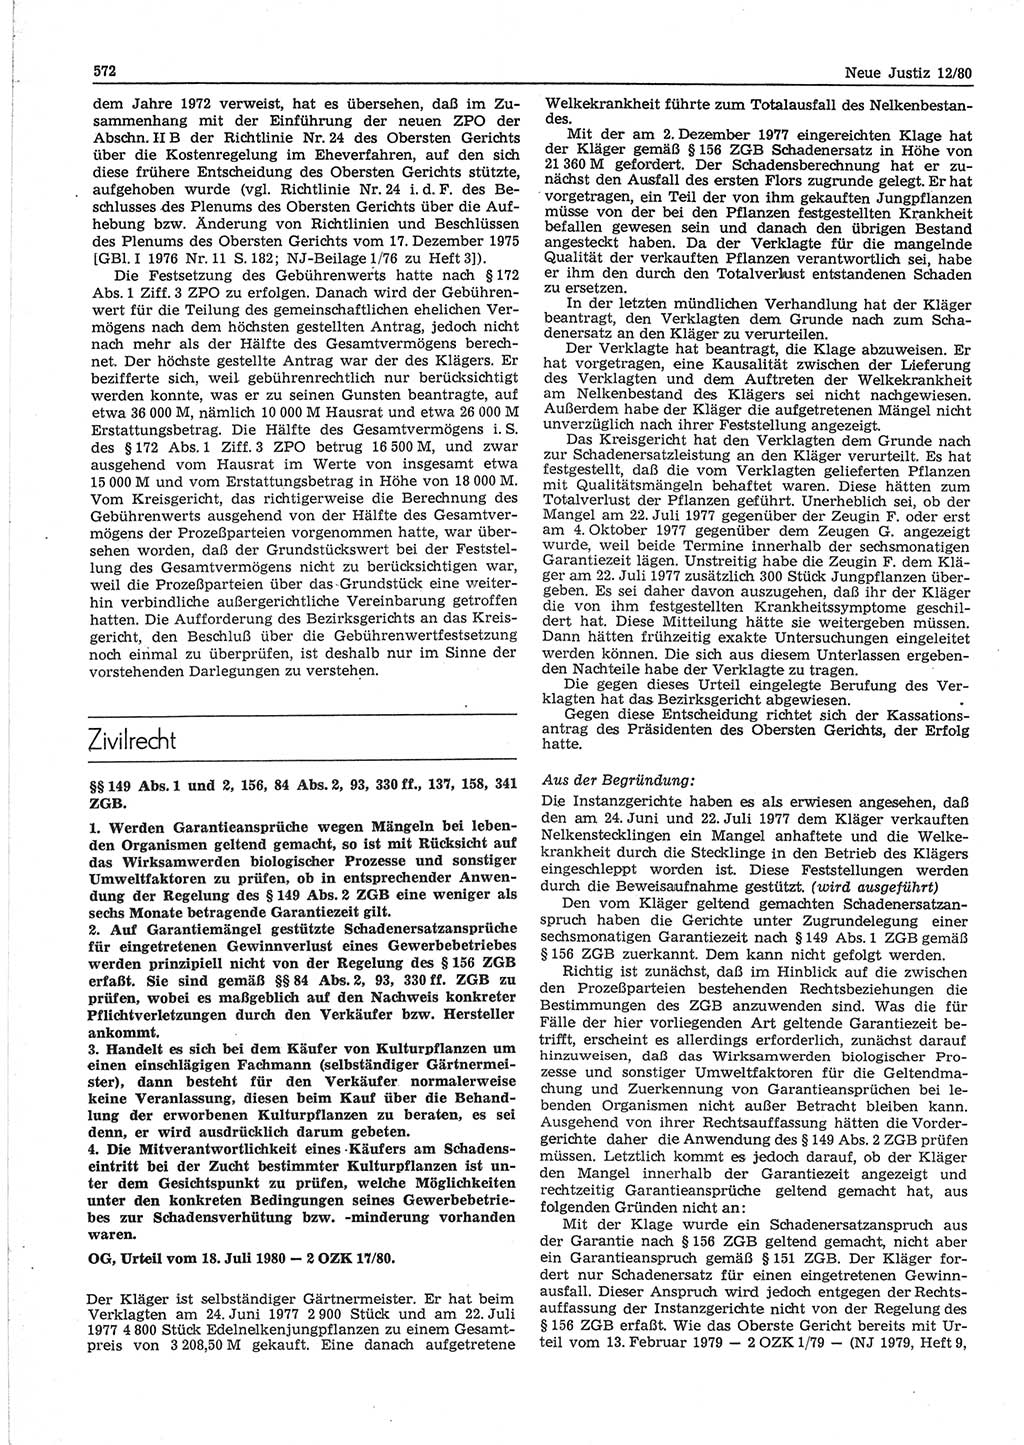 Neue Justiz (NJ), Zeitschrift für sozialistisches Recht und Gesetzlichkeit [Deutsche Demokratische Republik (DDR)], 34. Jahrgang 1980, Seite 572 (NJ DDR 1980, S. 572)